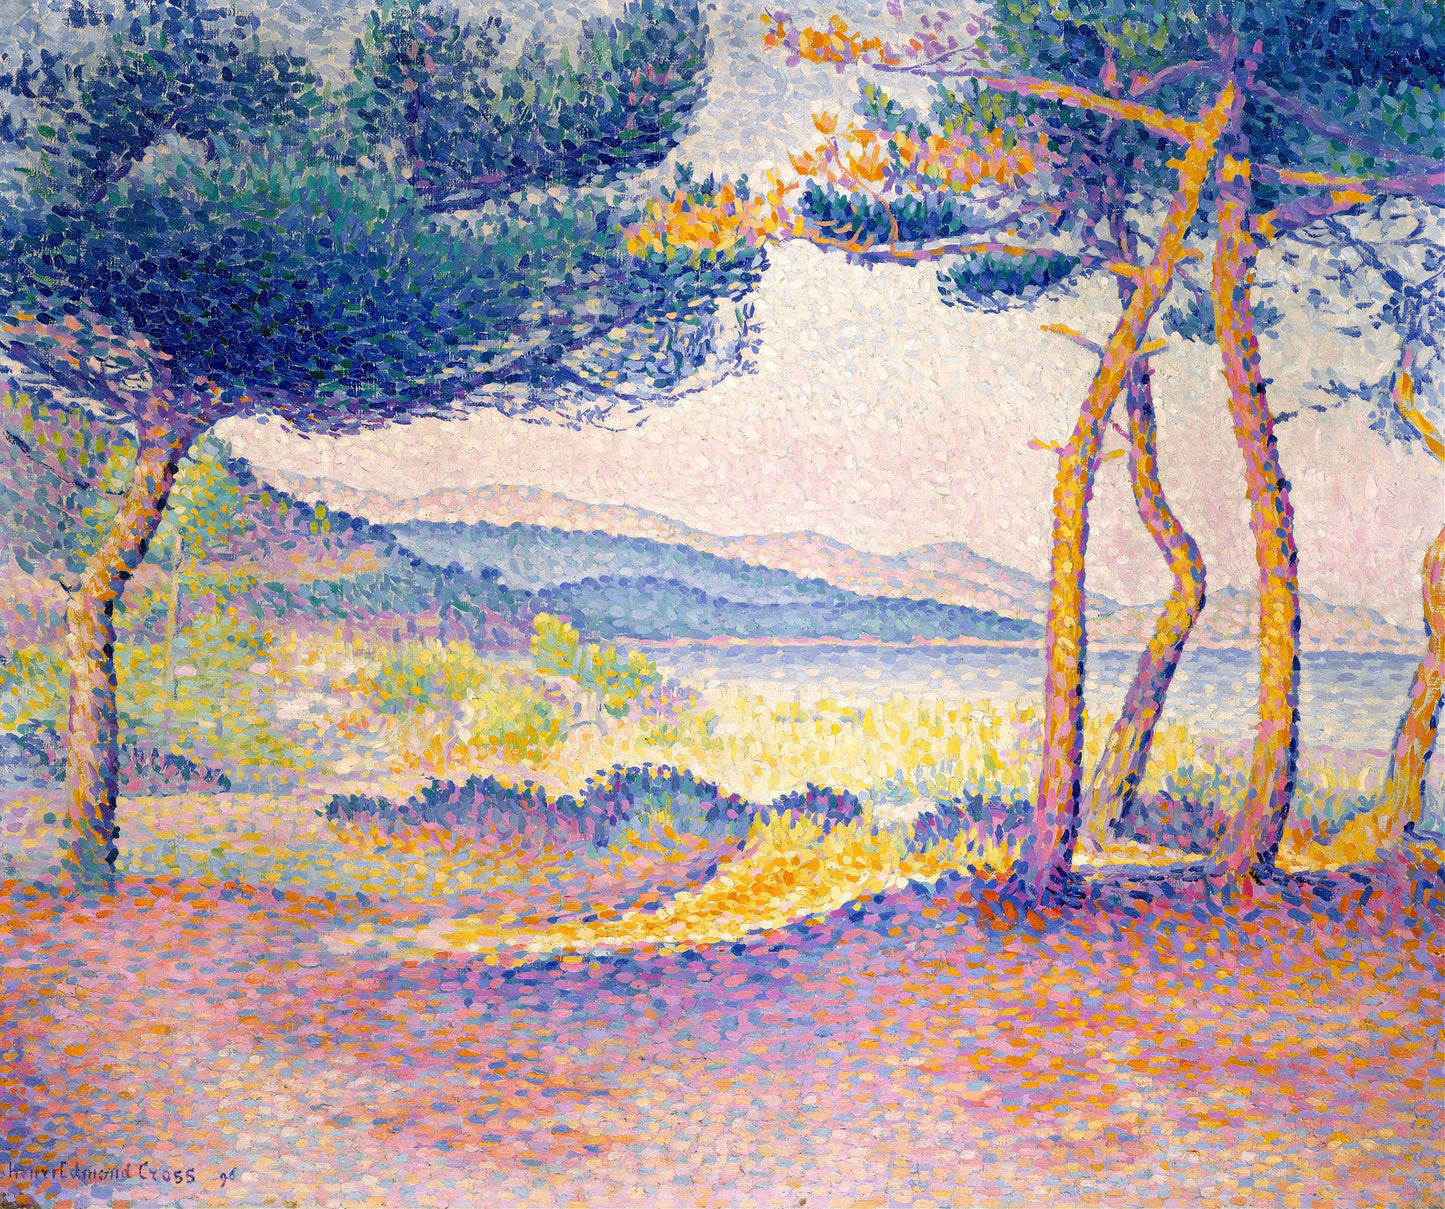 Henri Edmond Cross Neo Impressionist Paintings Set 2 [20 Images]